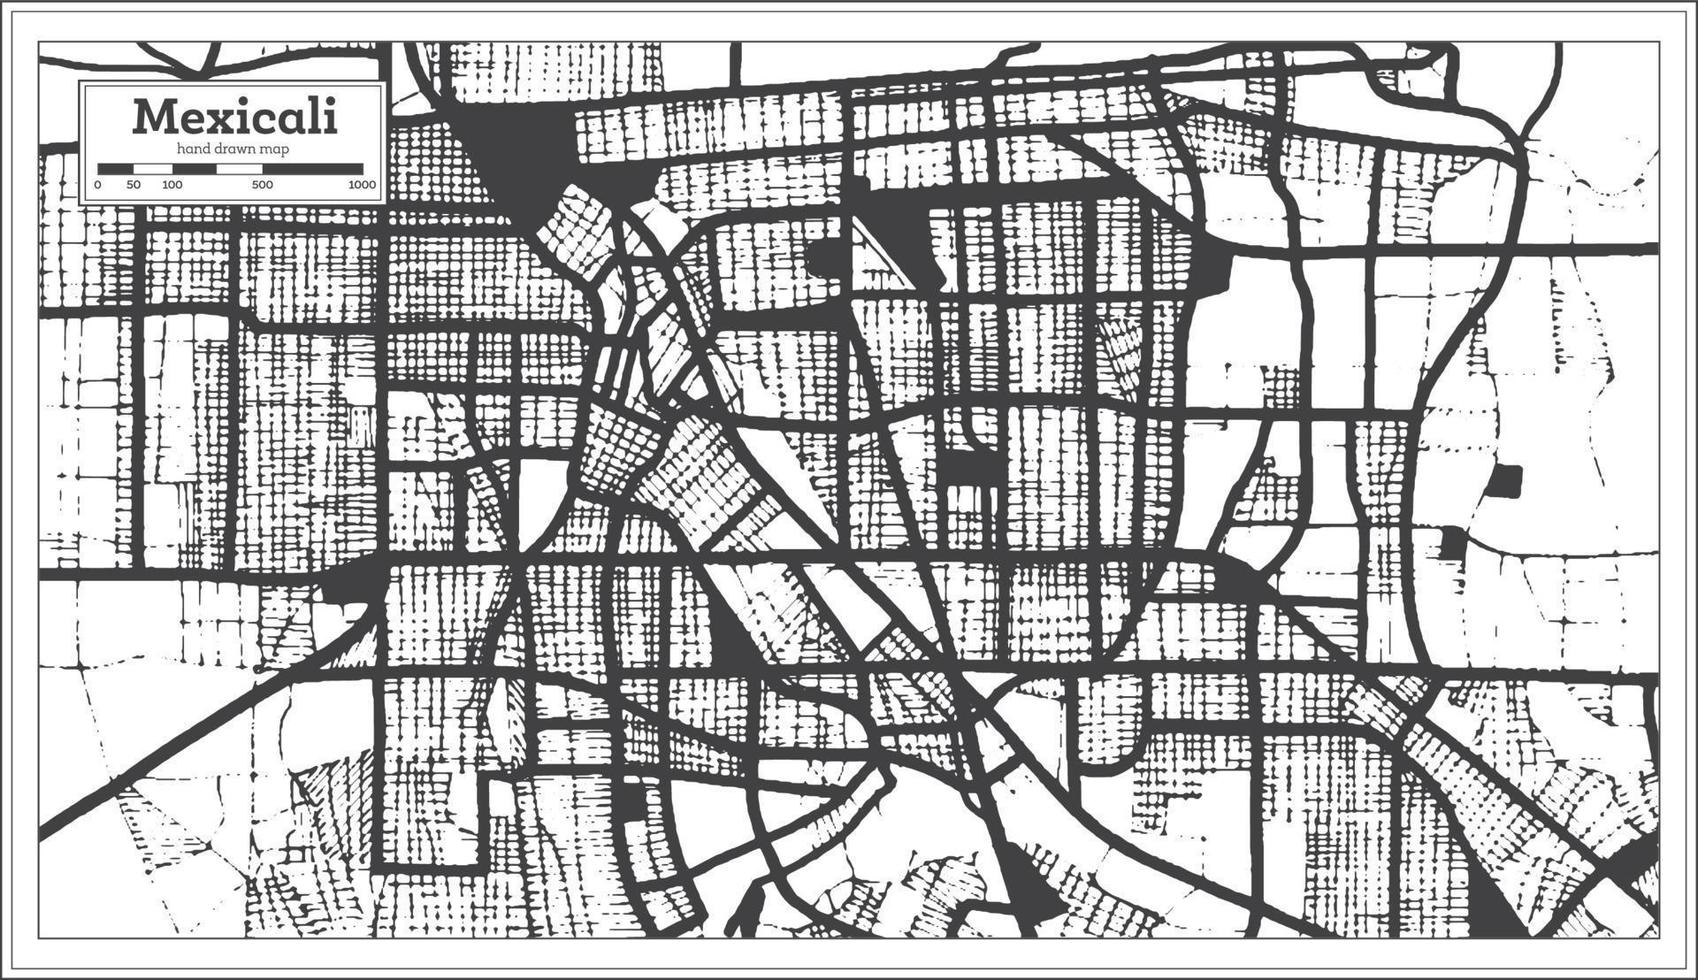 mexicali Mexico stad kaart in zwart en wit kleur in retro stijl. schets kaart. vector